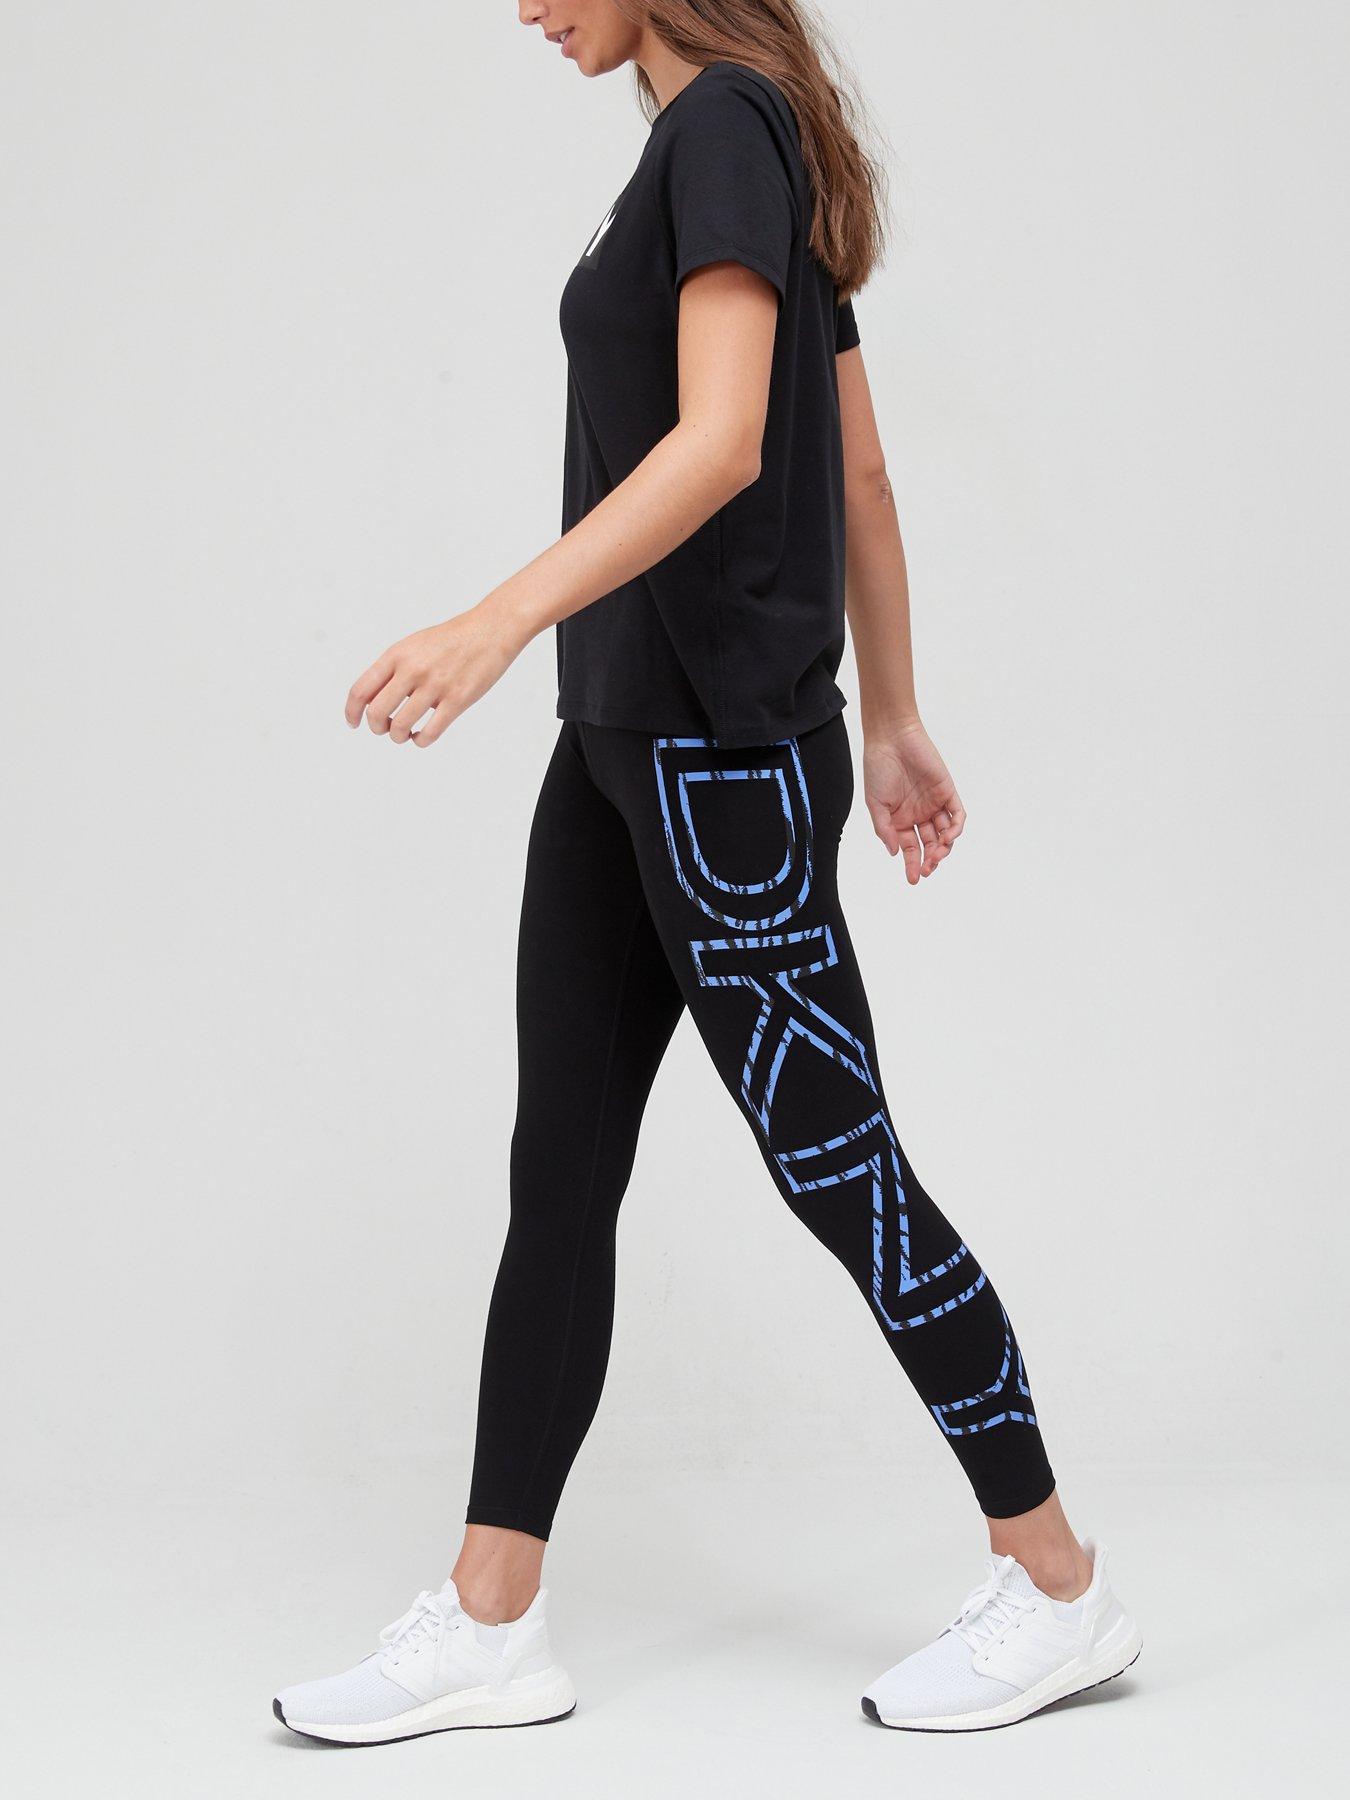 DKNY Women's Leggings - Clothing